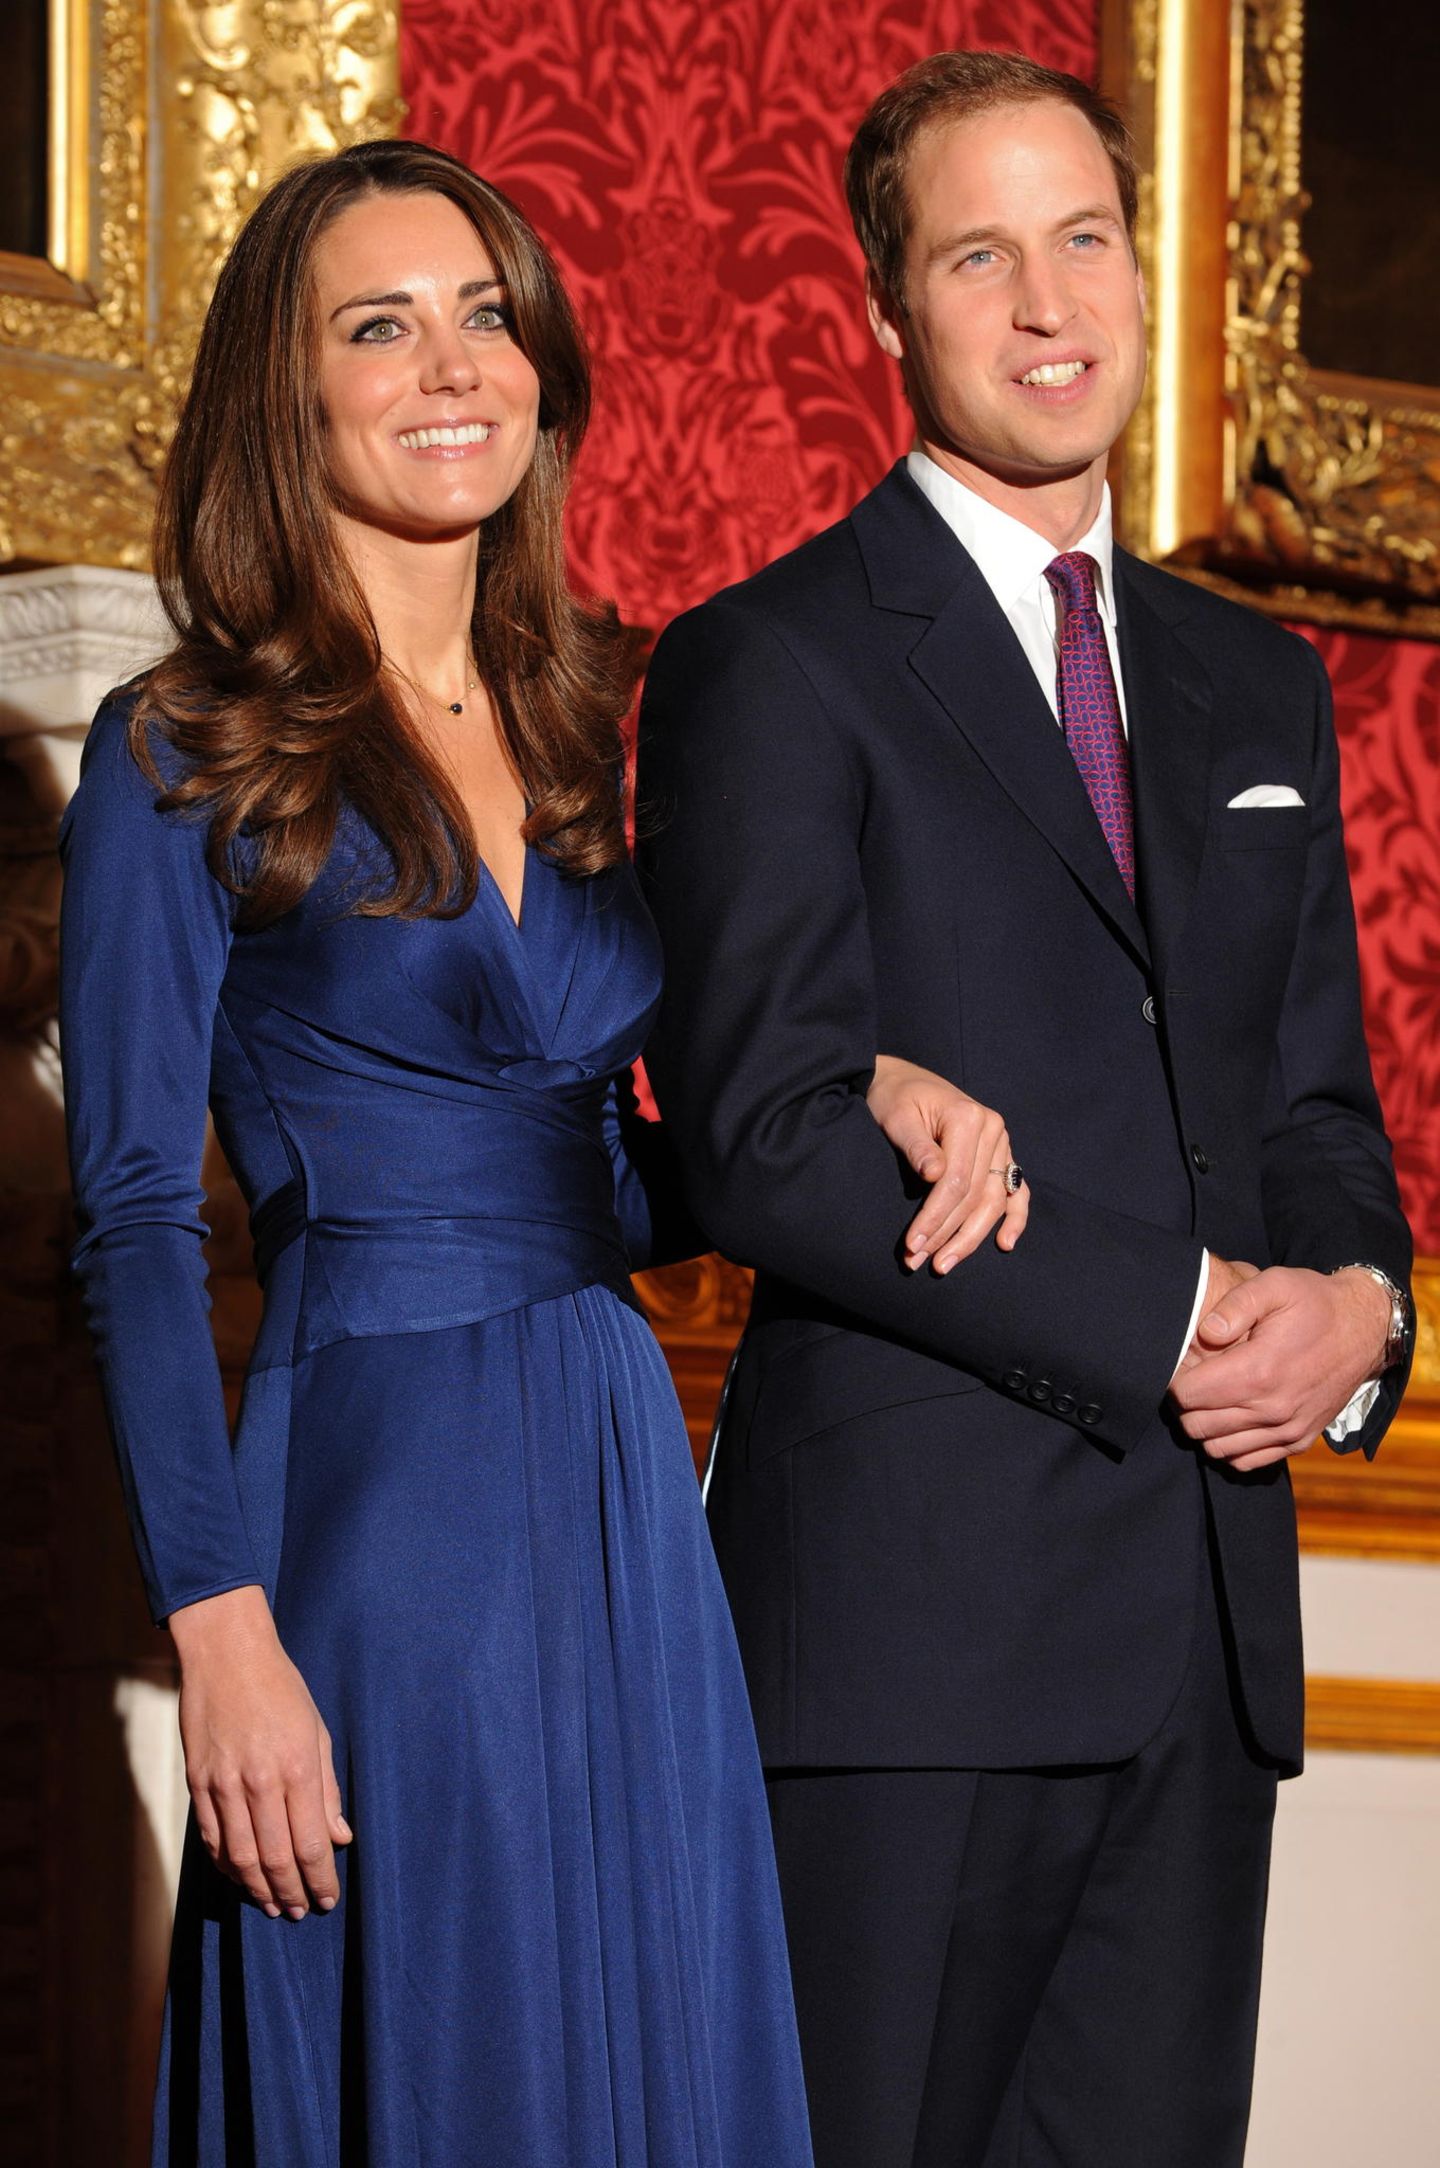 Die schönsten Bilder von Prinz William & Kate Middleton